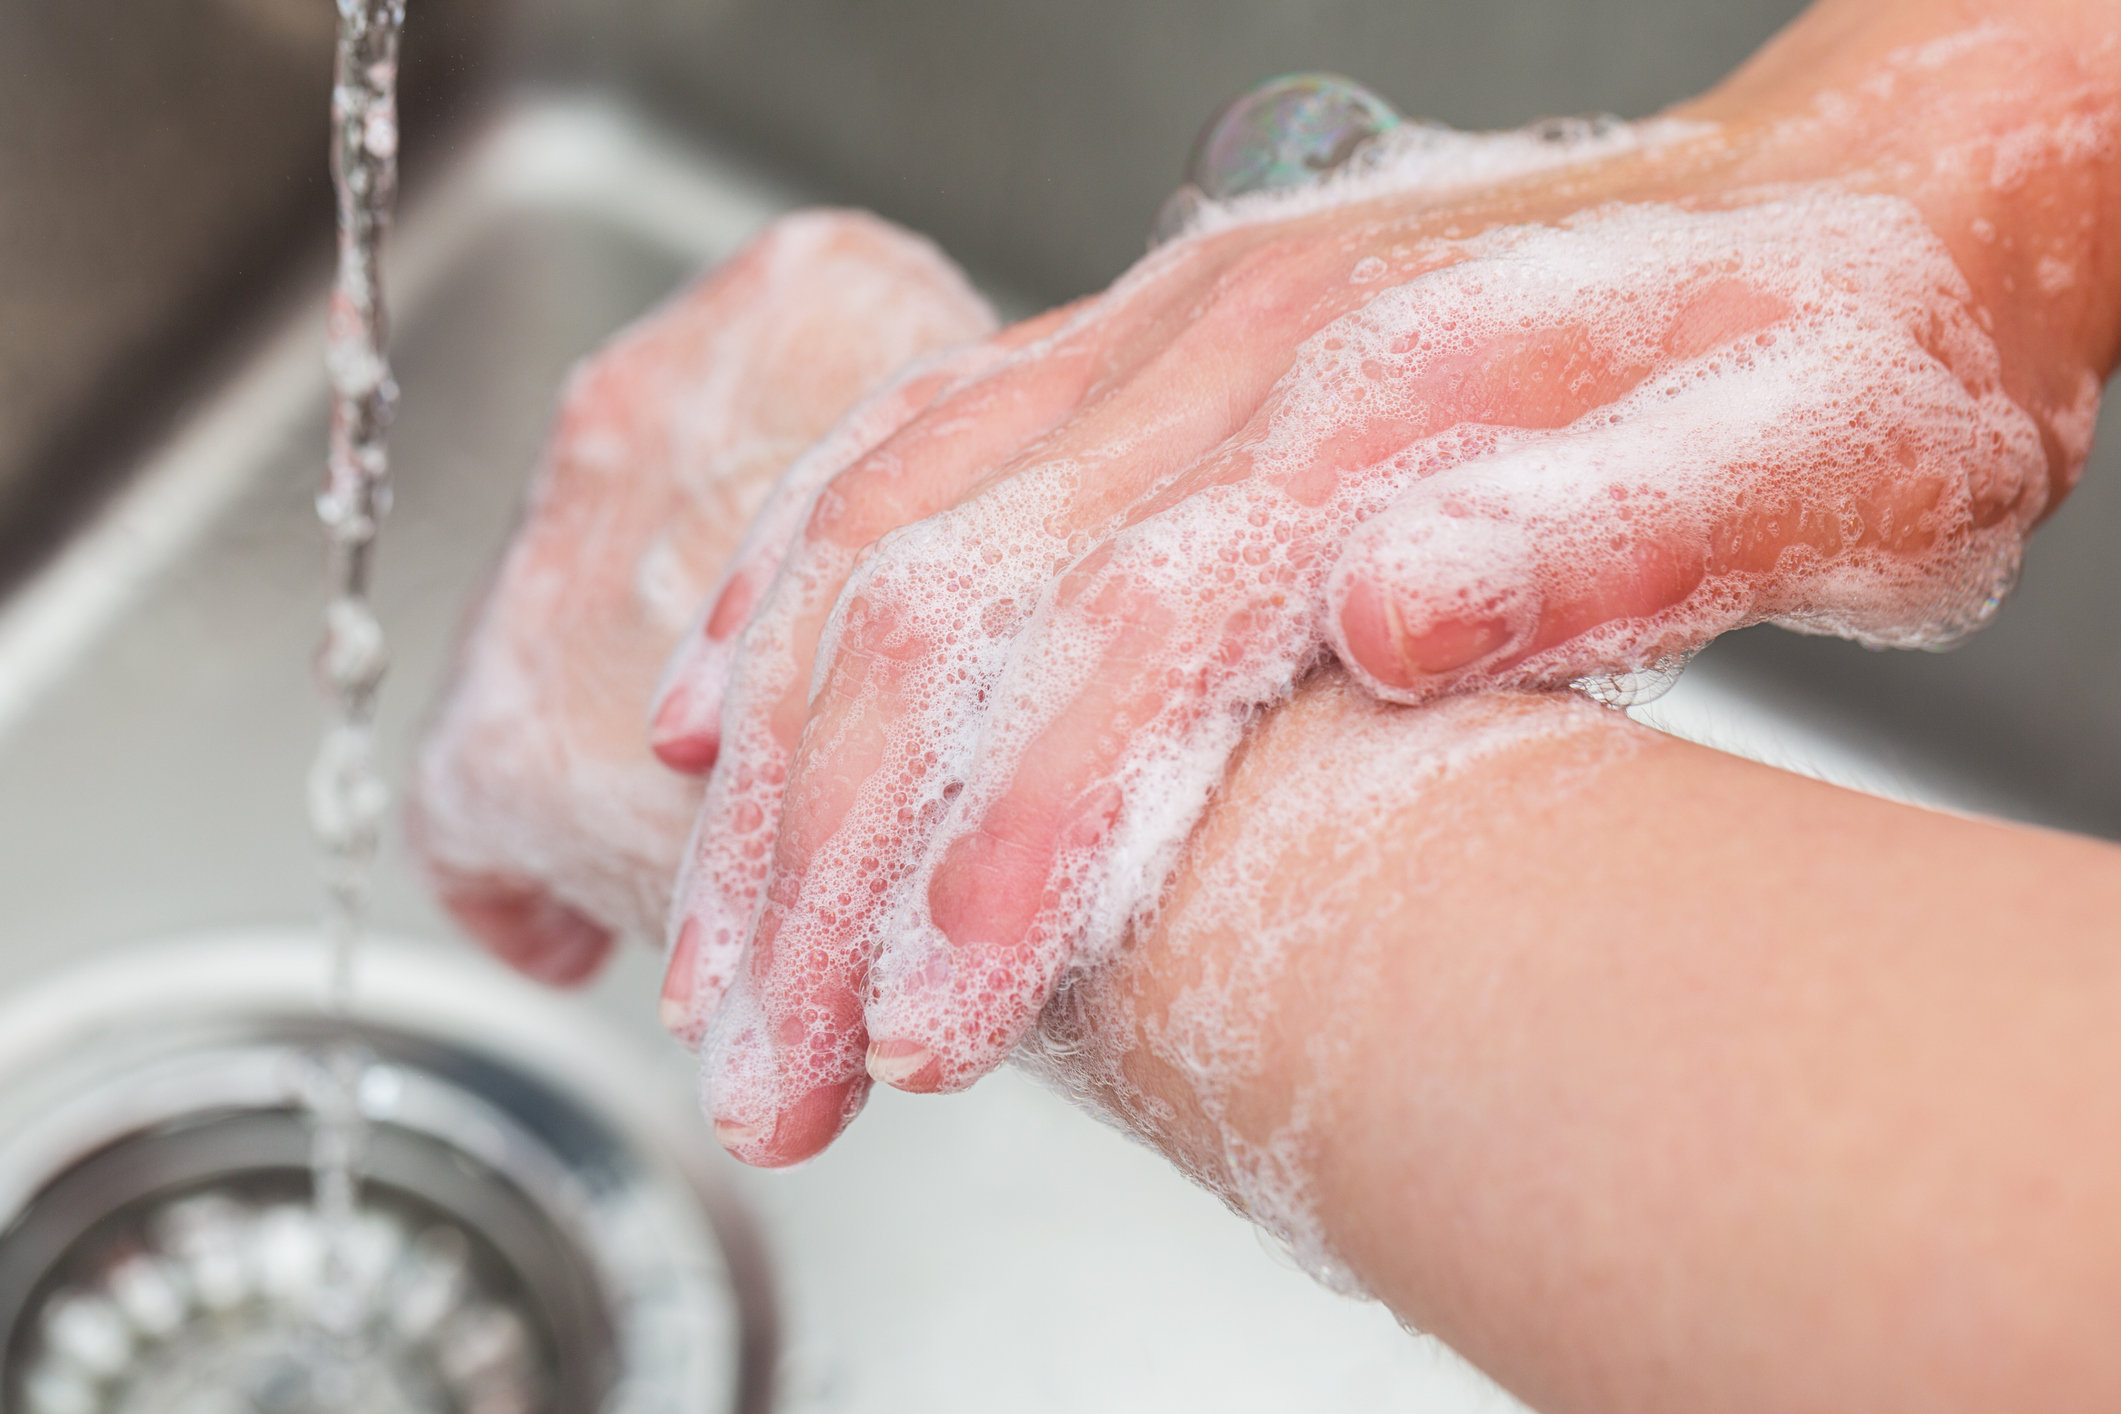 Тщательное мытье рук признано эффективным средством борьбы с распространением болезней и инфекций